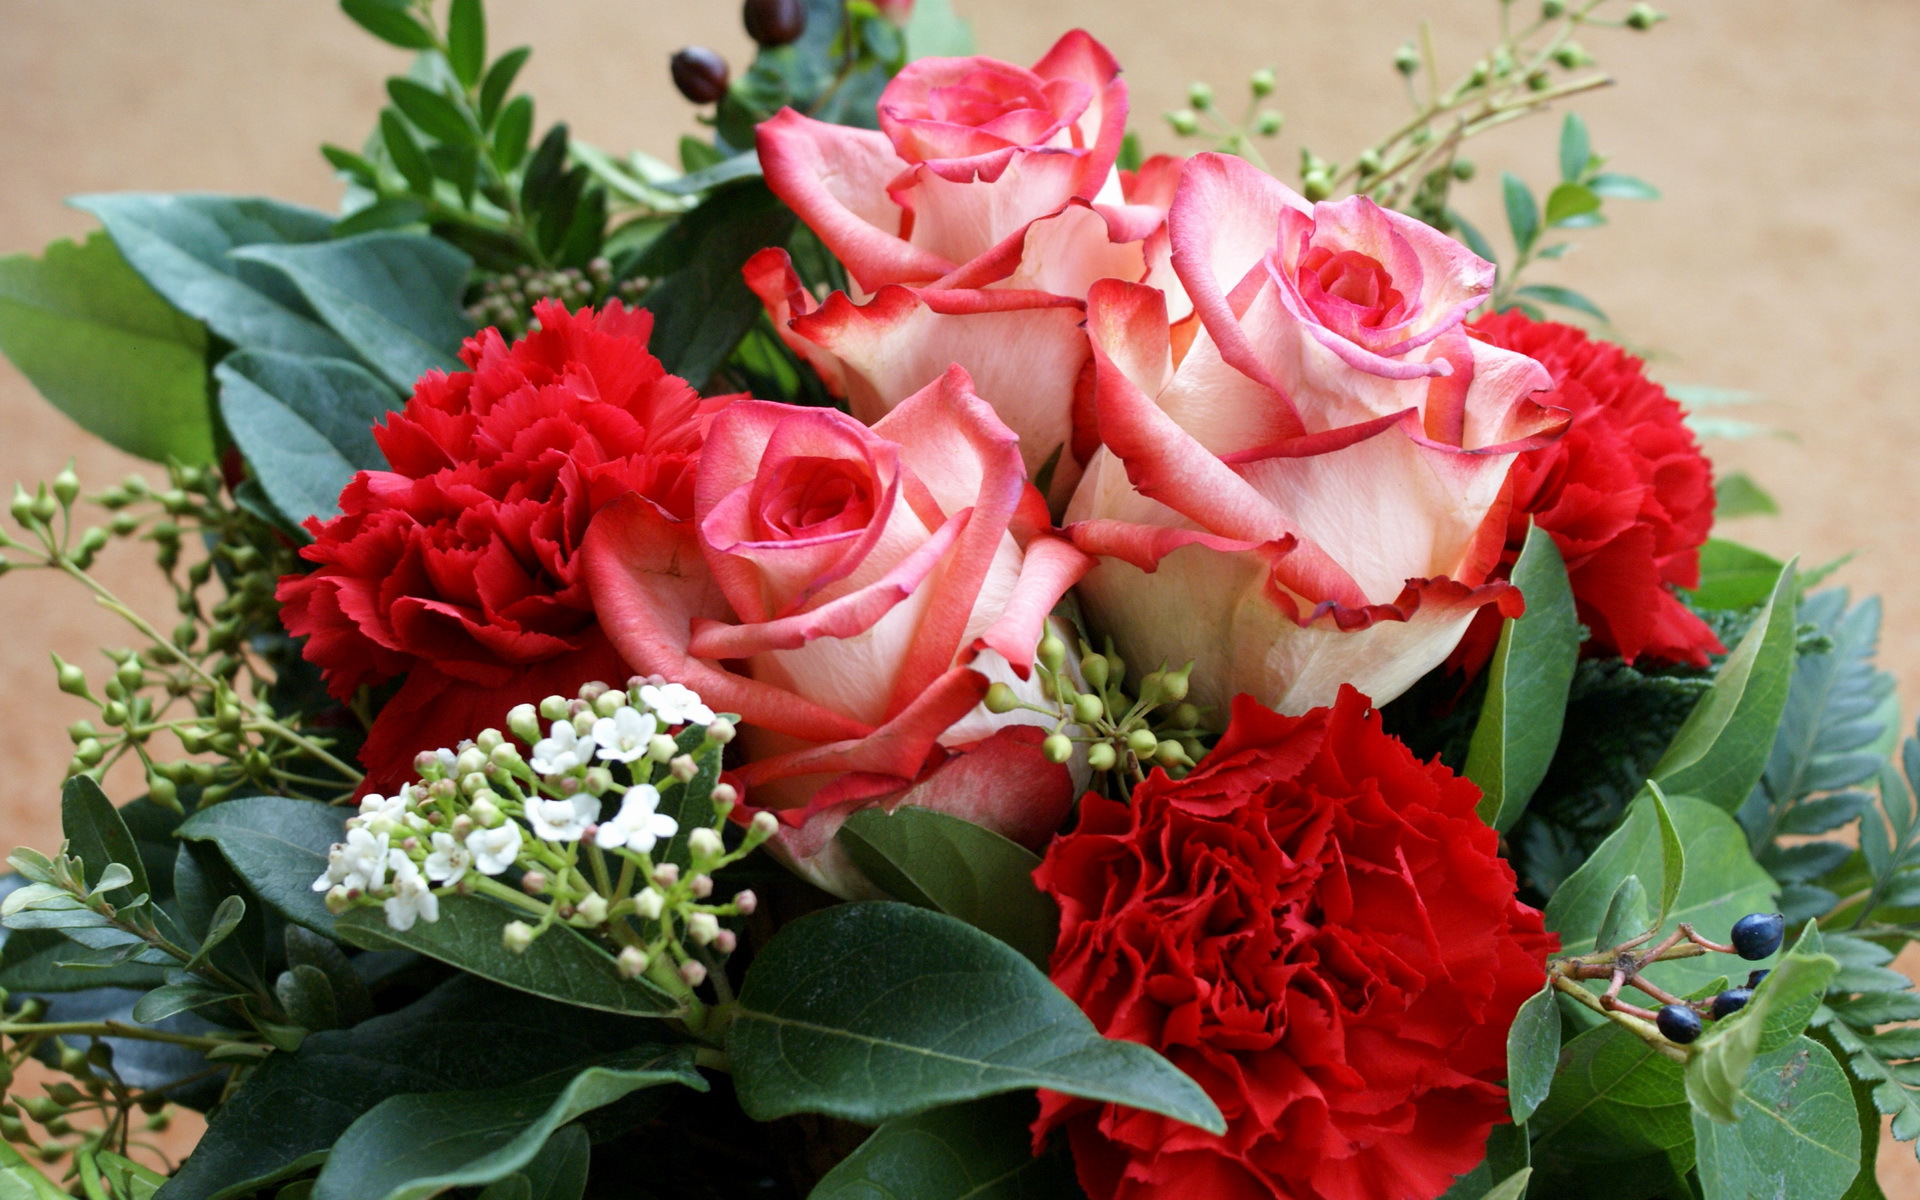 Скачать обои бесплатно Цветы, Розы, Букеты, Растения картинка на рабочий стол ПК